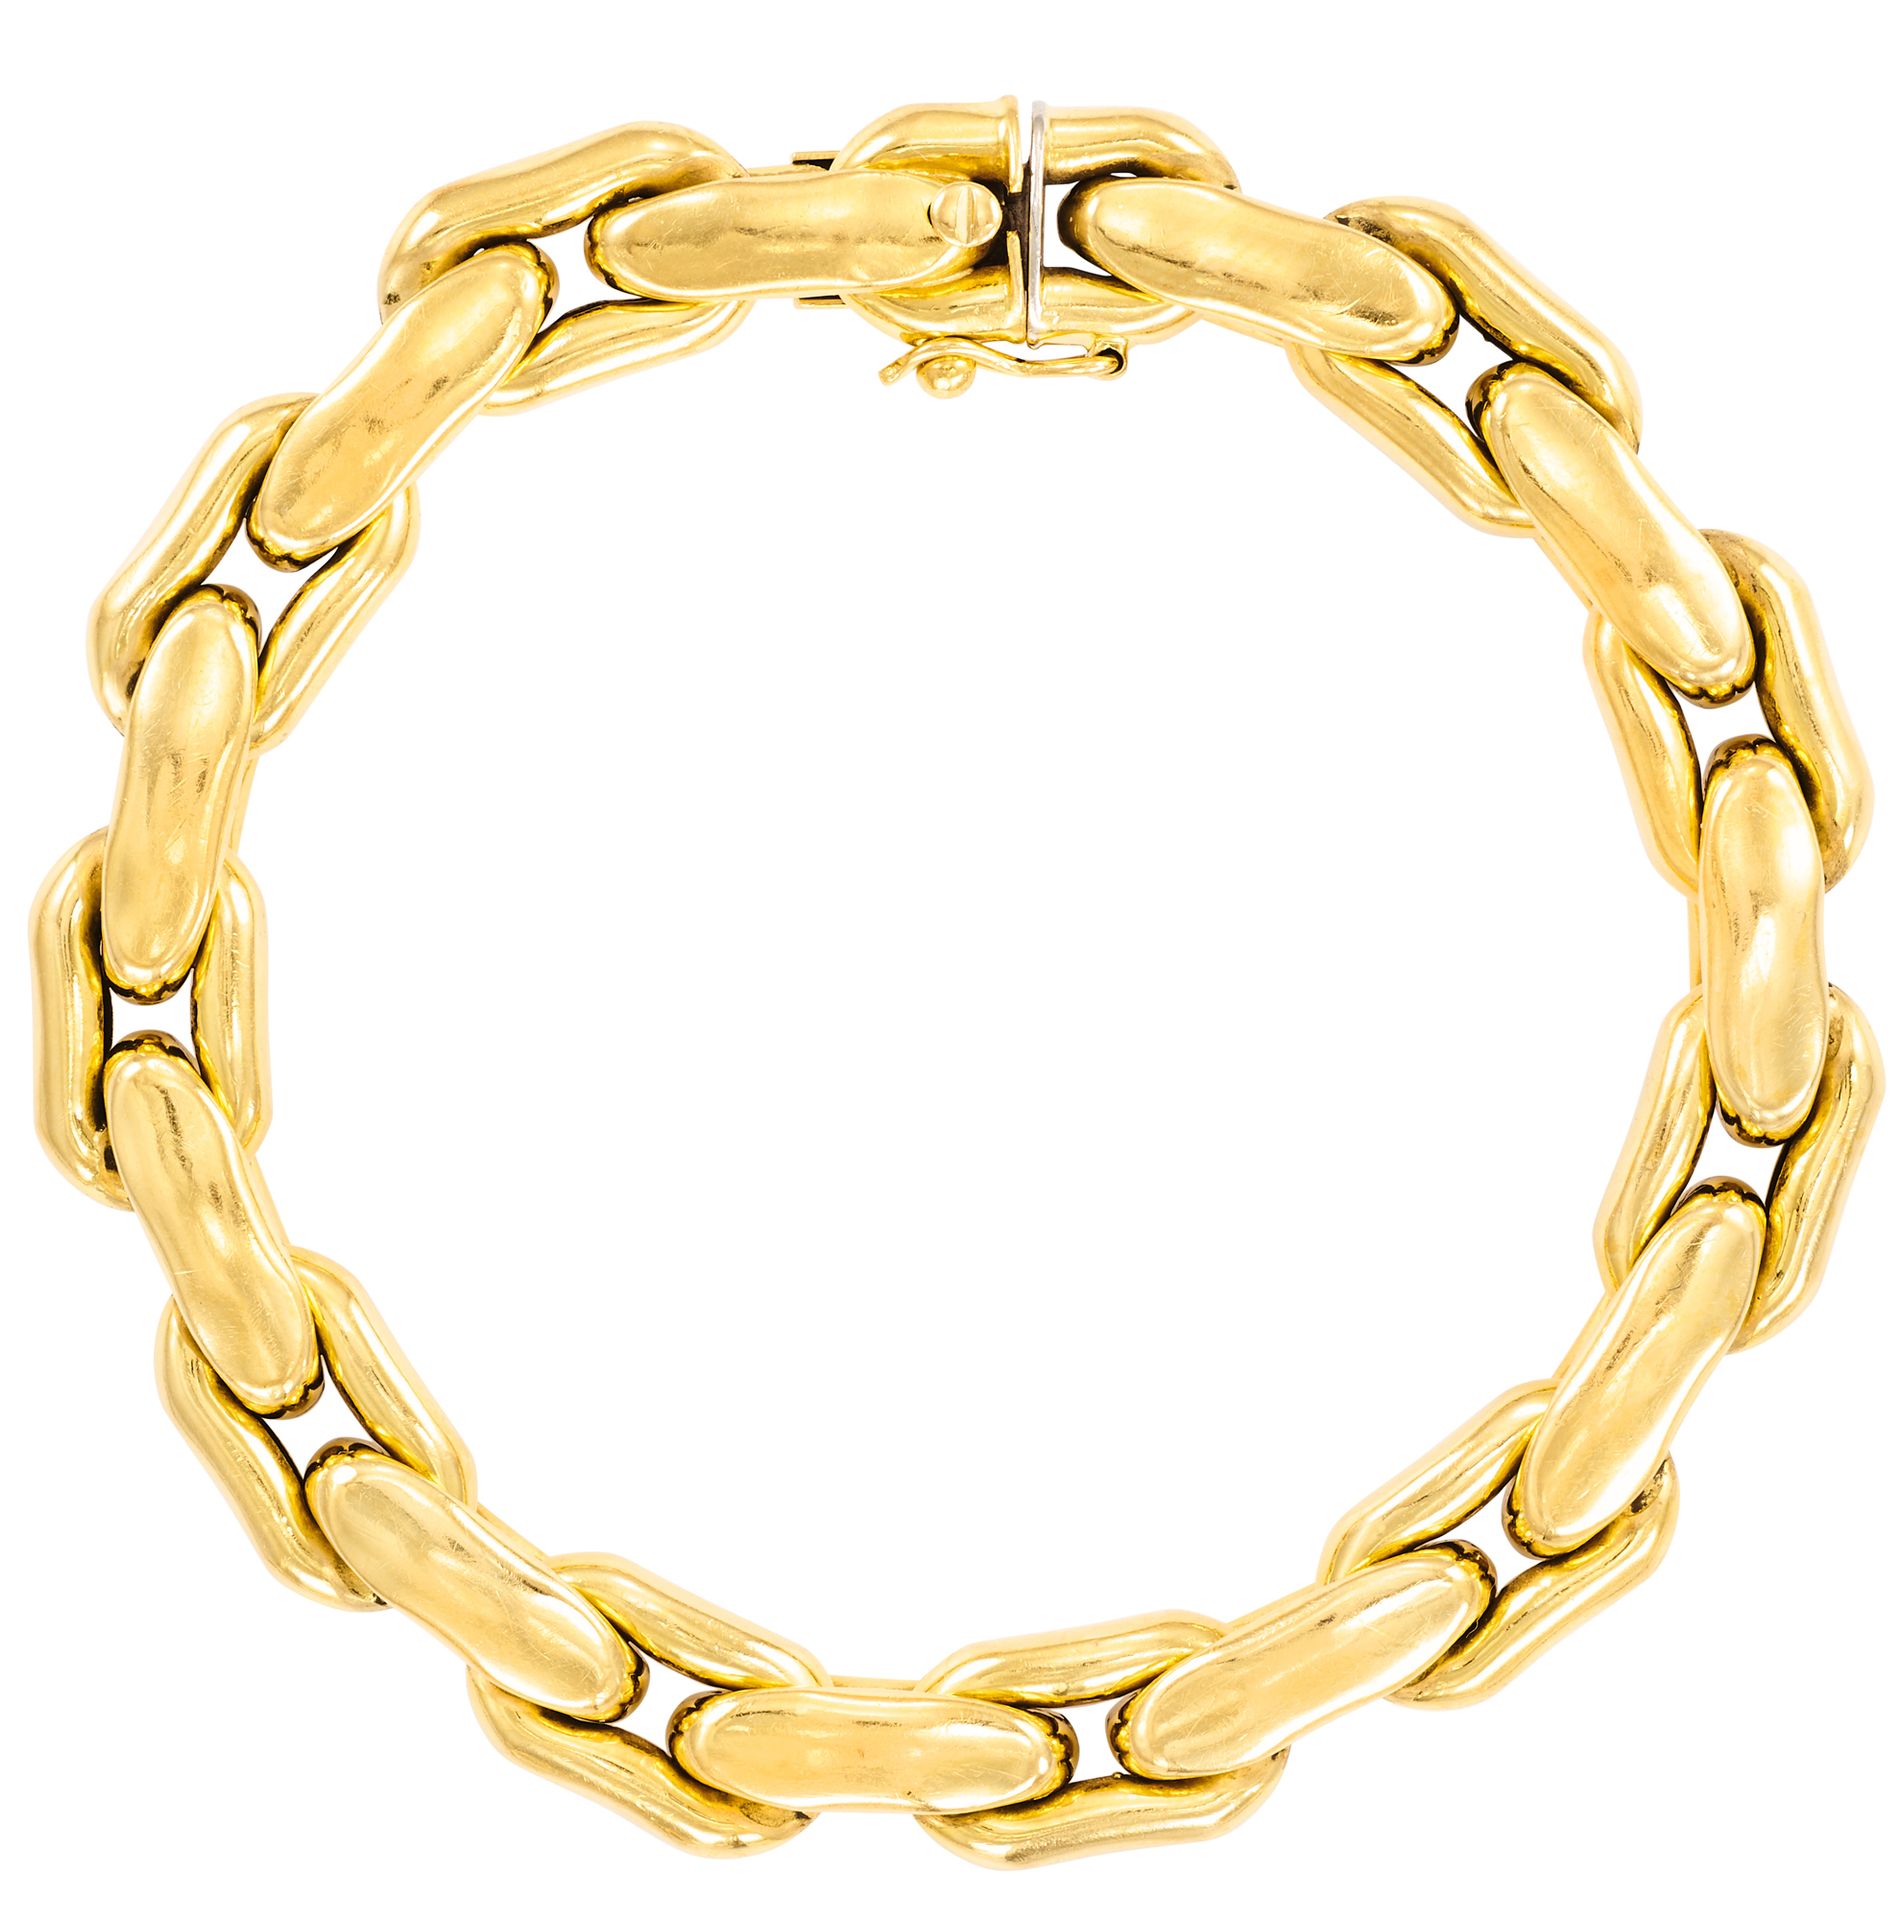 Bracelet 黄金加长豆子链
长：19 厘米 - 宽：0.8 厘米
重量：26.07 克（18K-750/1000）